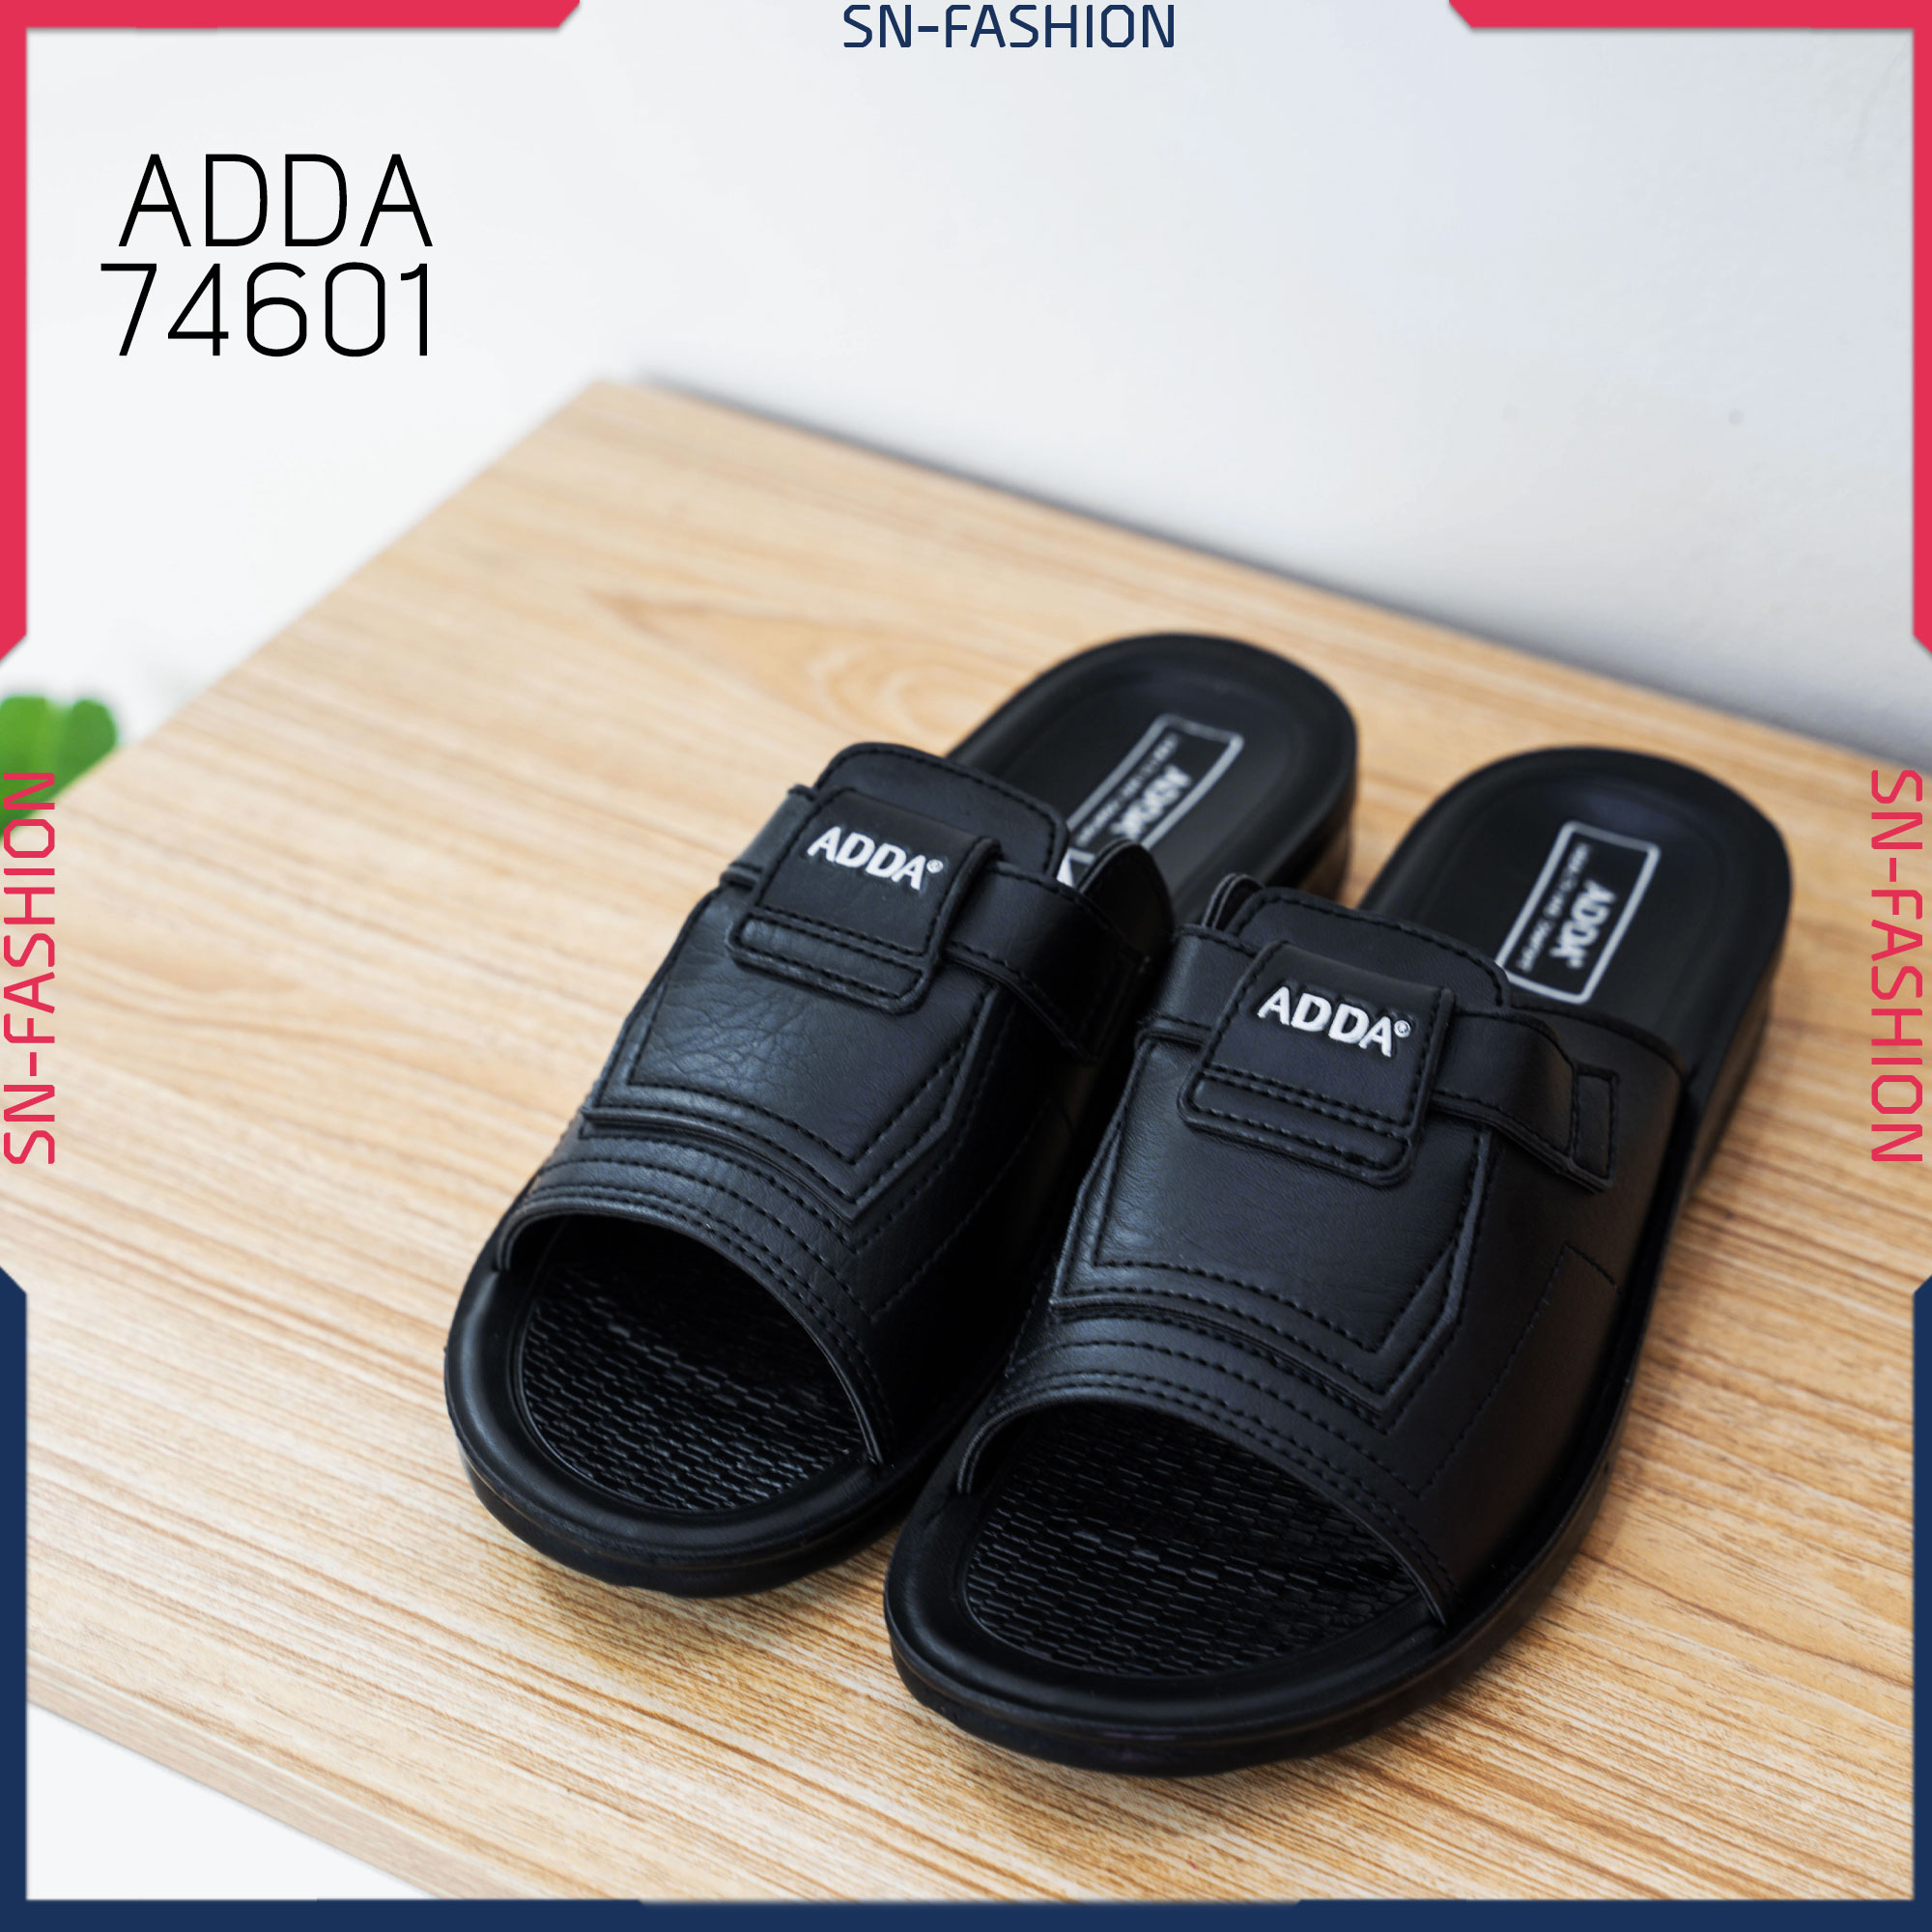 รองเท้า ADDA 74601 - แตะ สวม ลำลอง สบาย - ดำ - รองเท้า แตะ สวมลำลอง พื้นเบา สวมสบาย ของแท้ ลด ราคาพิเศษ รองเท้าแตะ สวมลำลอง รองเท้าสวม สวม